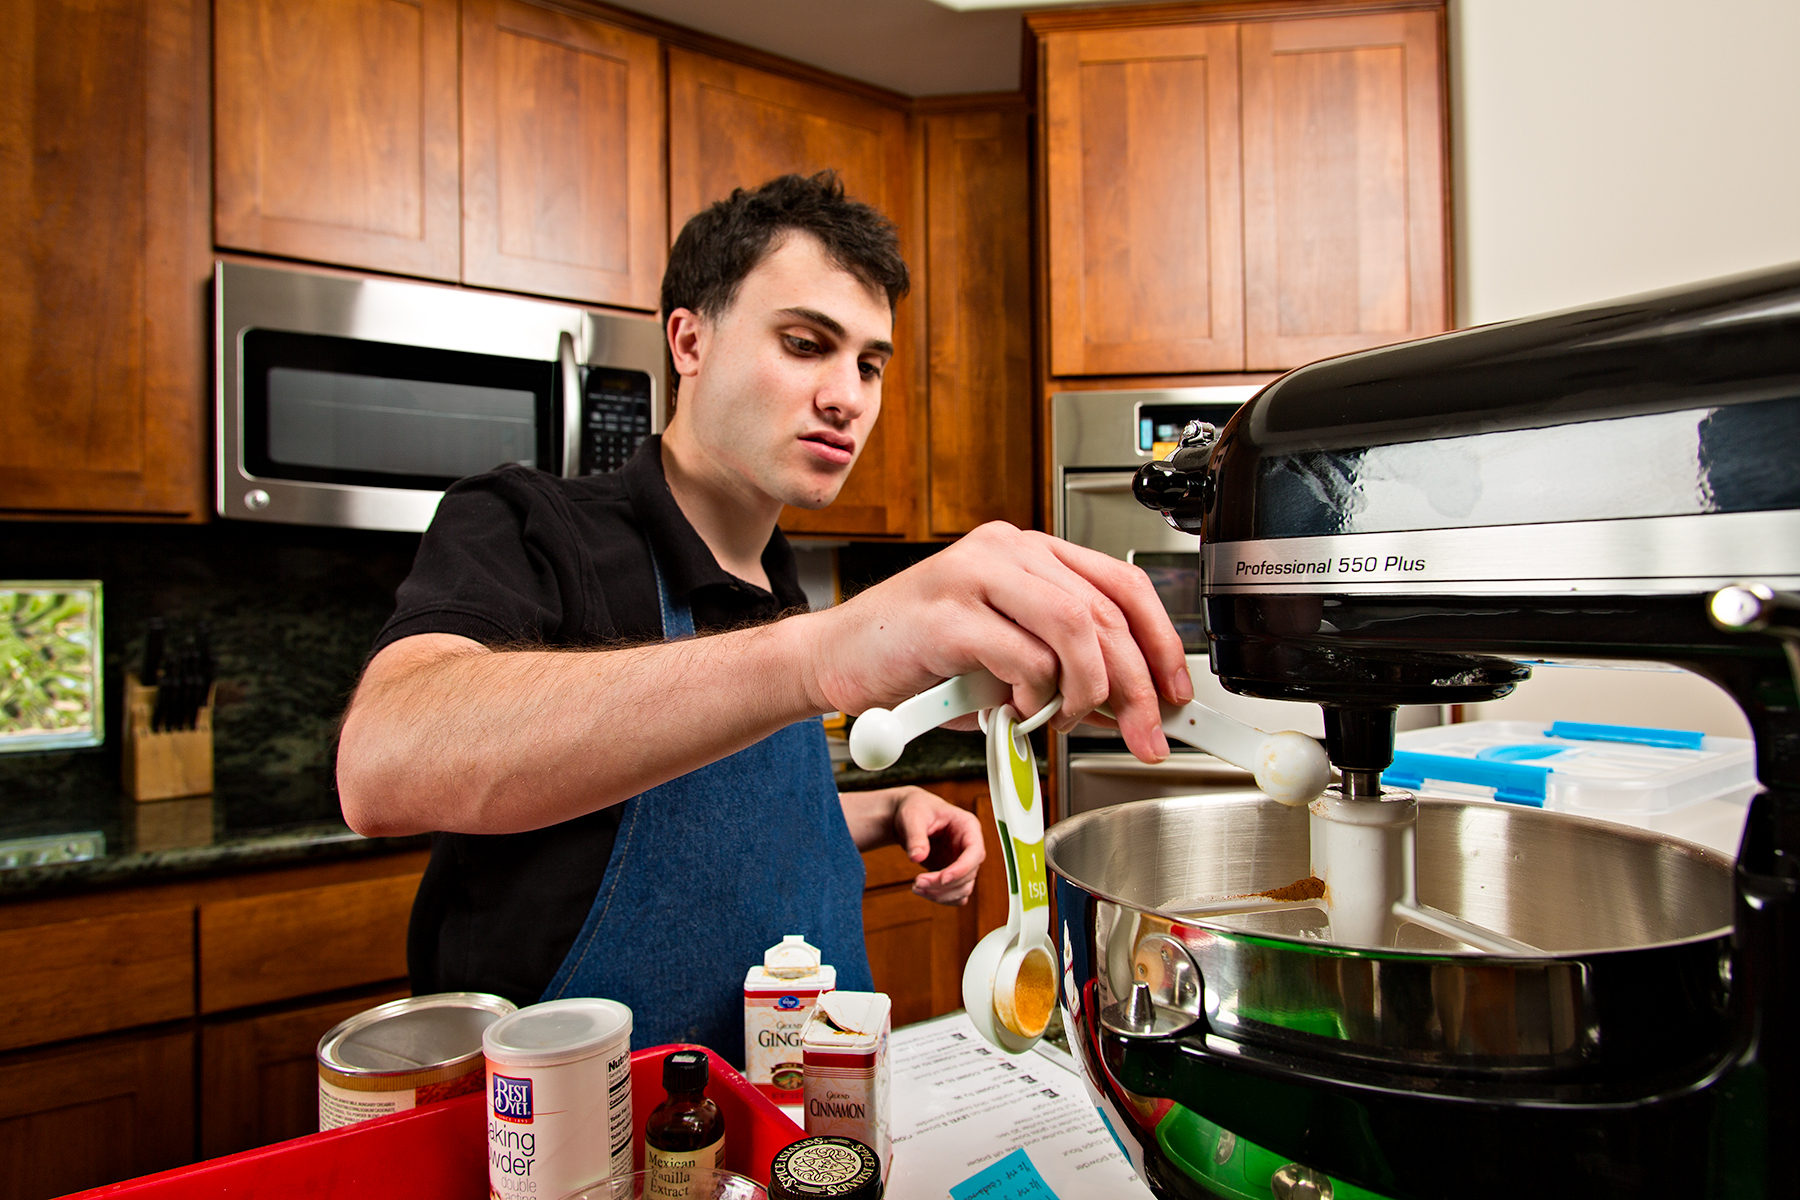 Matt baking biscotti in his home kitchen